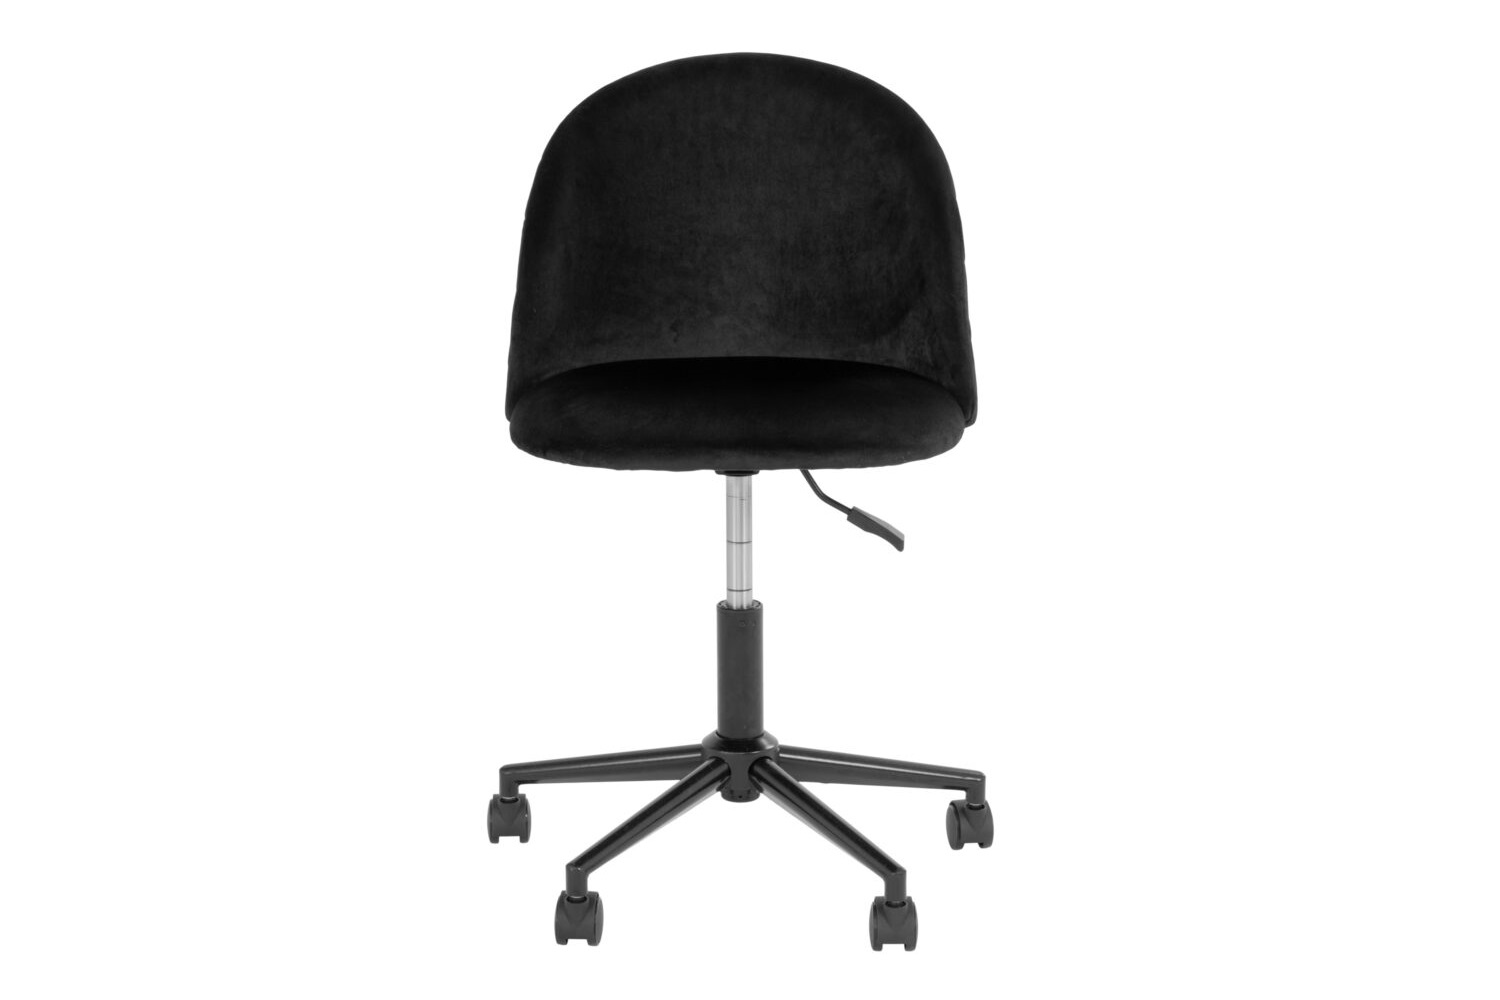 Designová kancelářská židle Ernesto černá